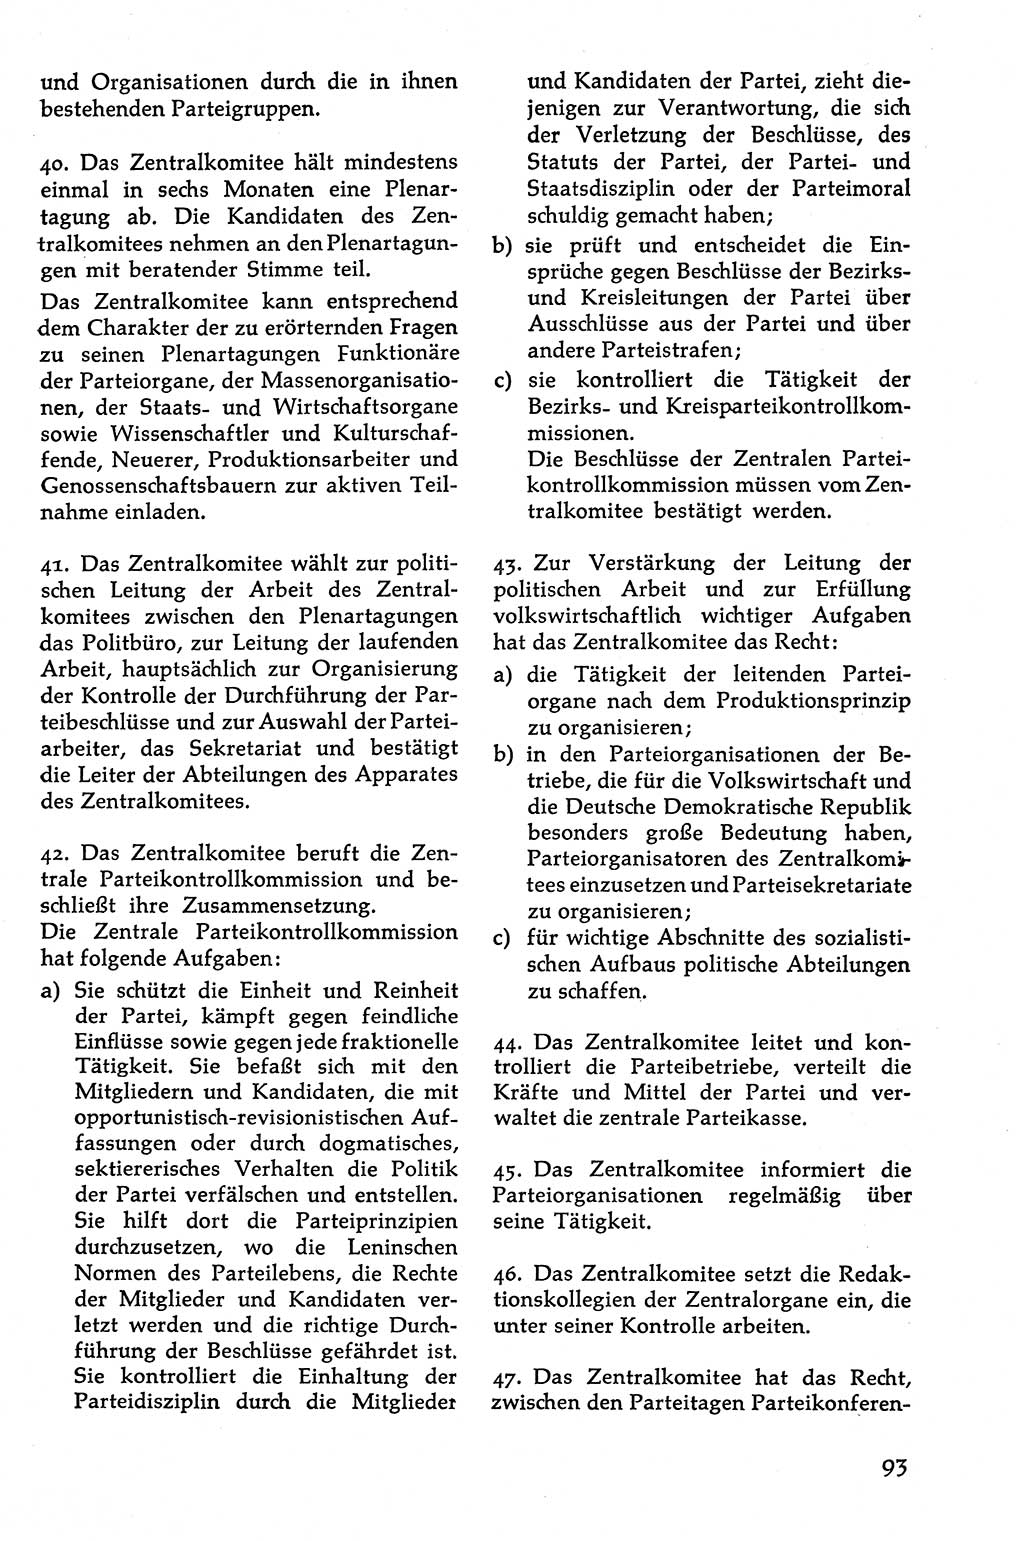 Volksdemokratische Ordnung in Mitteldeutschland [Deutsche Demokratische Republik (DDR)], Texte zur verfassungsrechtlichen Situation 1963, Seite 93 (Volksdem. Ordn. Md. DDR 1963, S. 93)